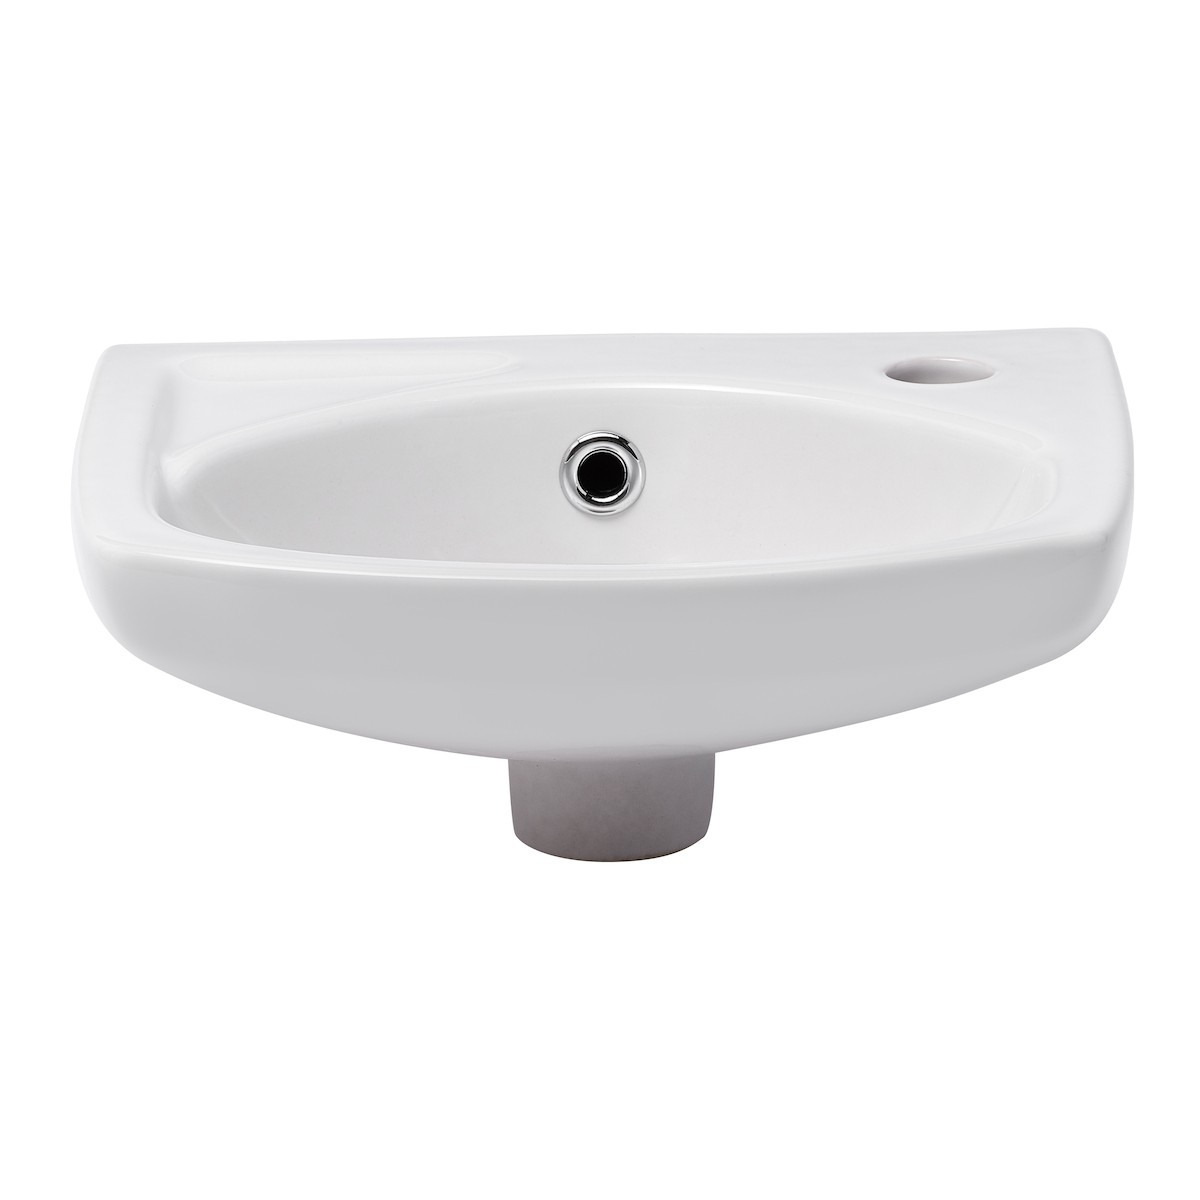 Robinet salle de bains monofluide lave-mains - GROHE Start Flow - Tail